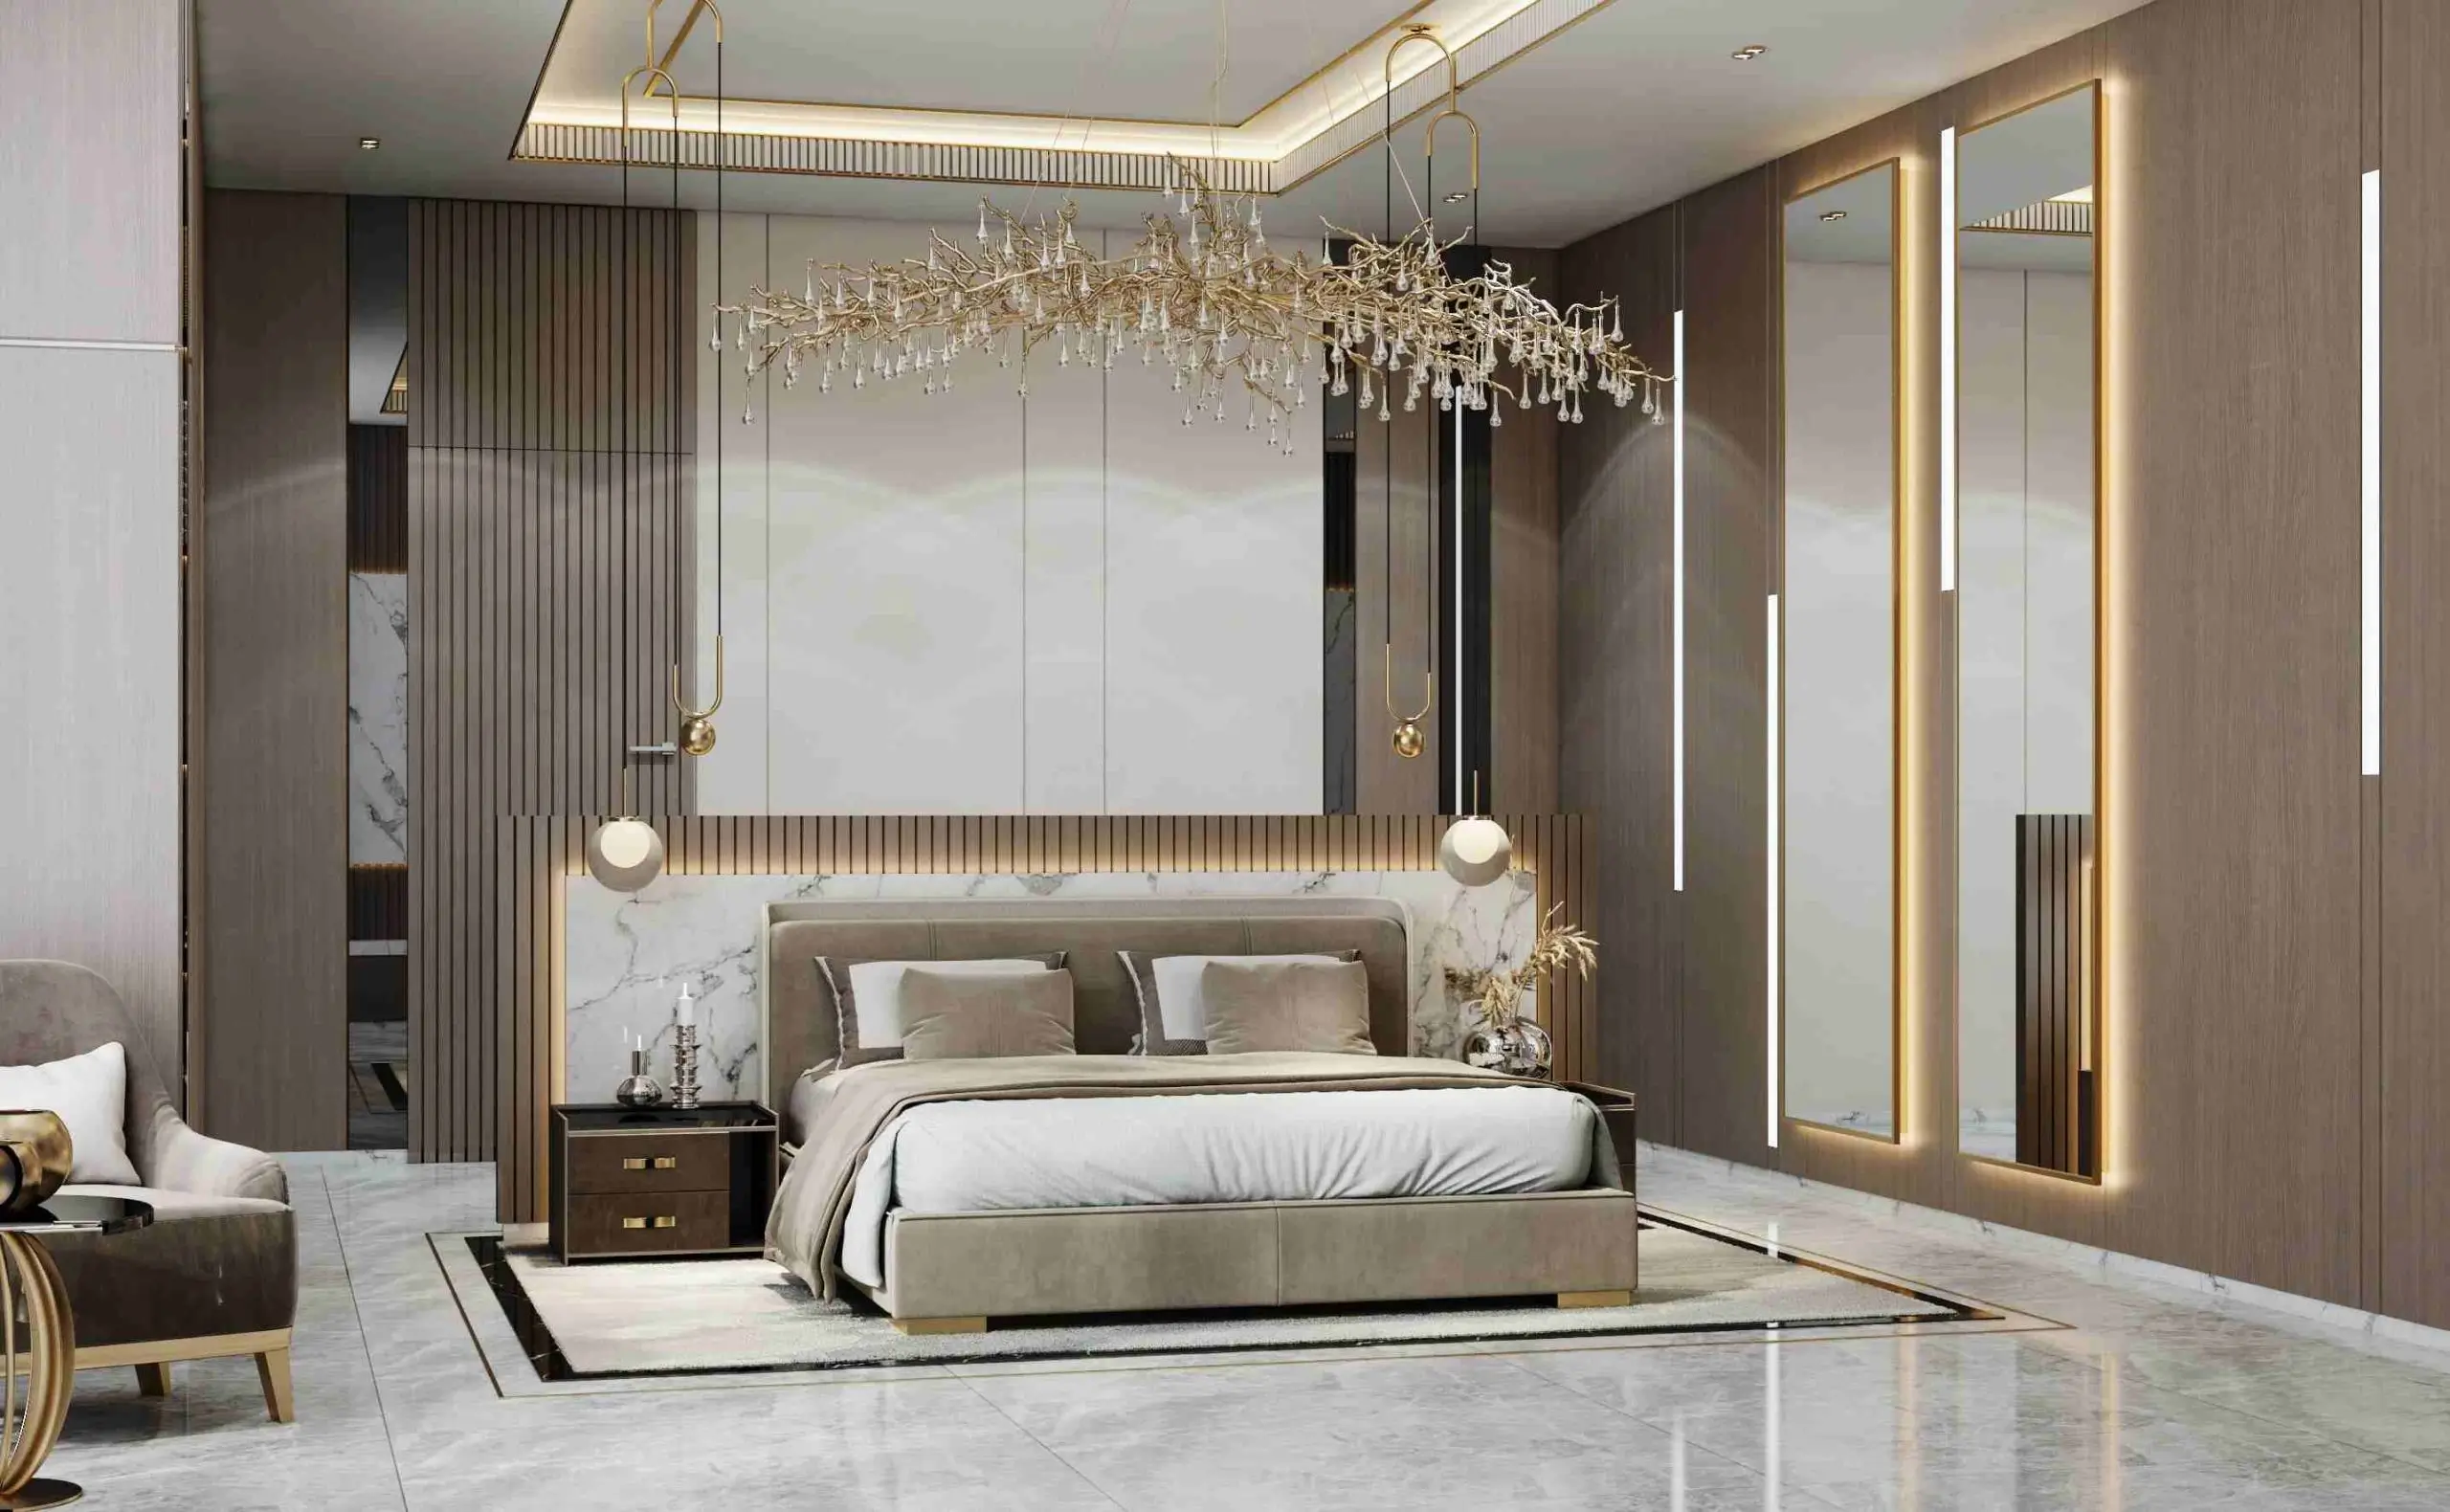 Interior Design Dubai for Bedroom 